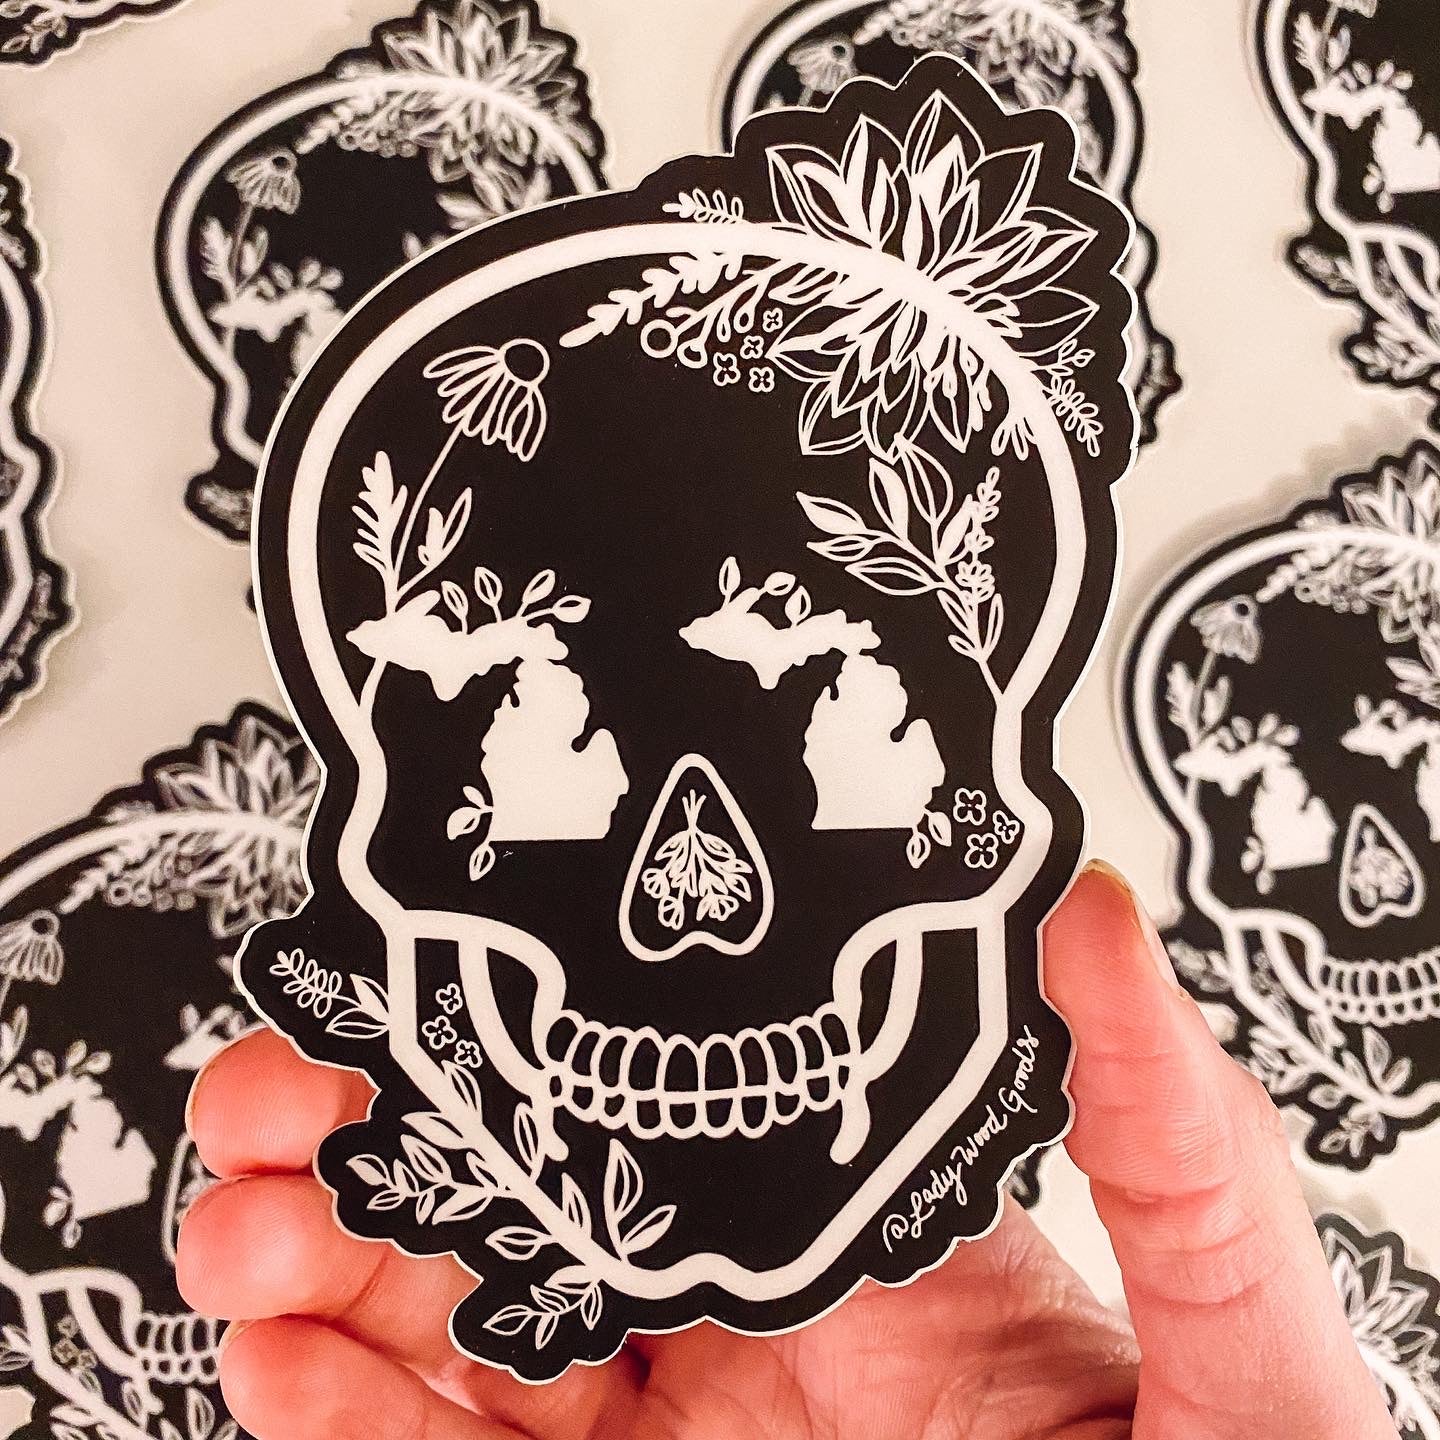 Black + White Mi Skull sticker